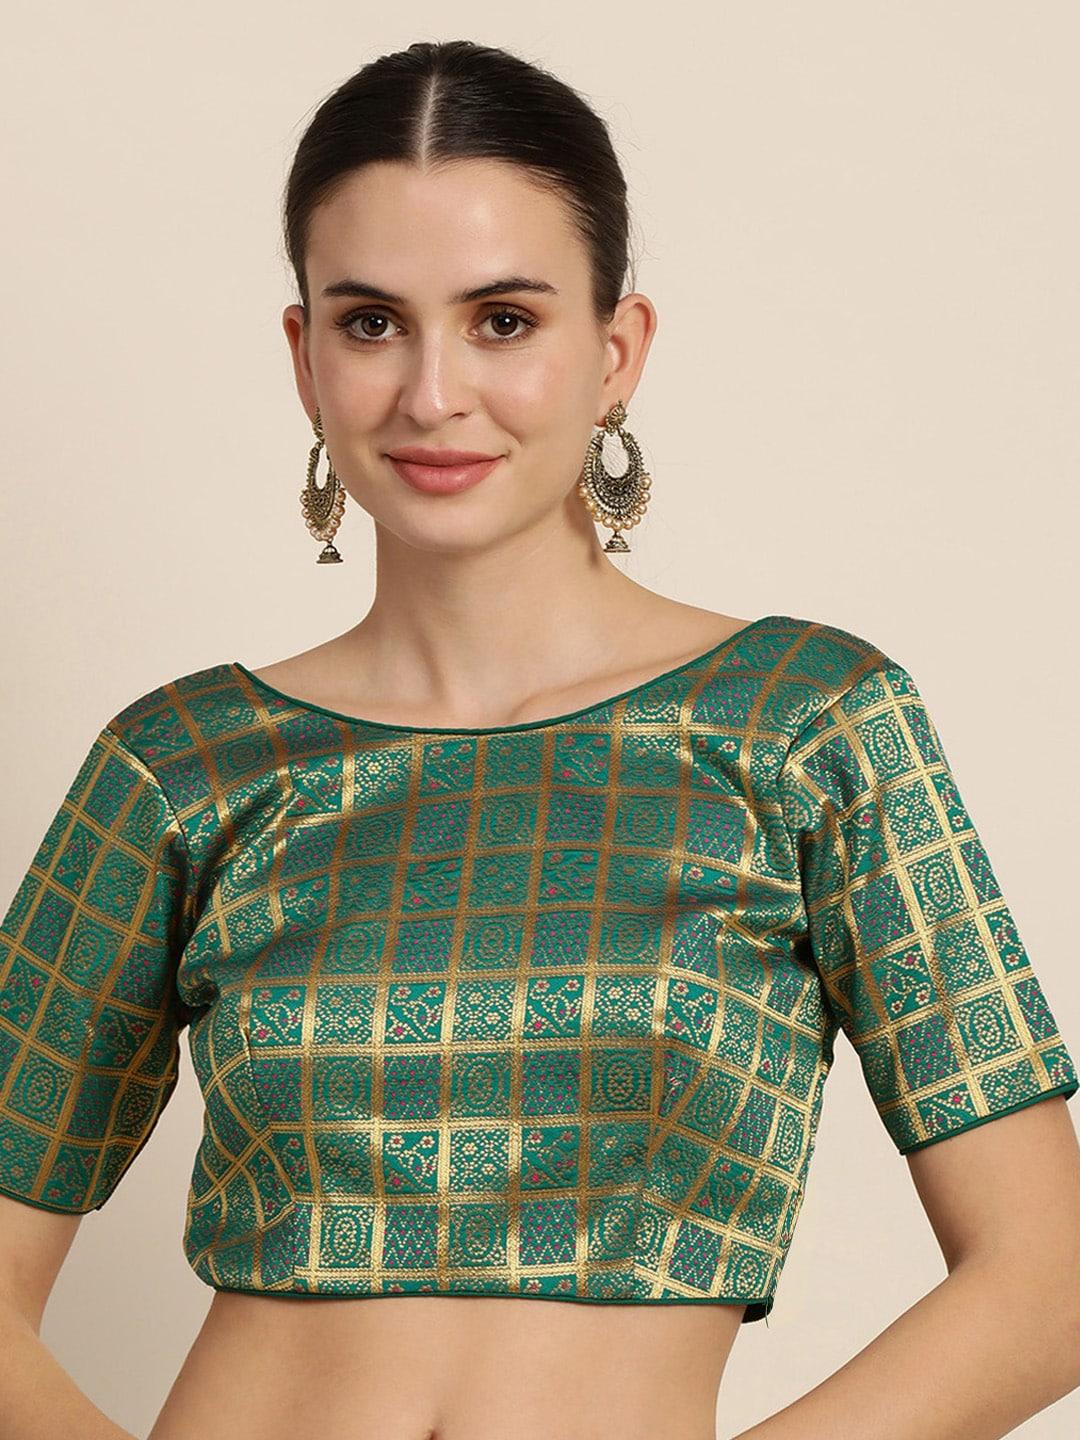 mimosa-women-teal-green-&-golden-woven-design-readymade-saree-blouse